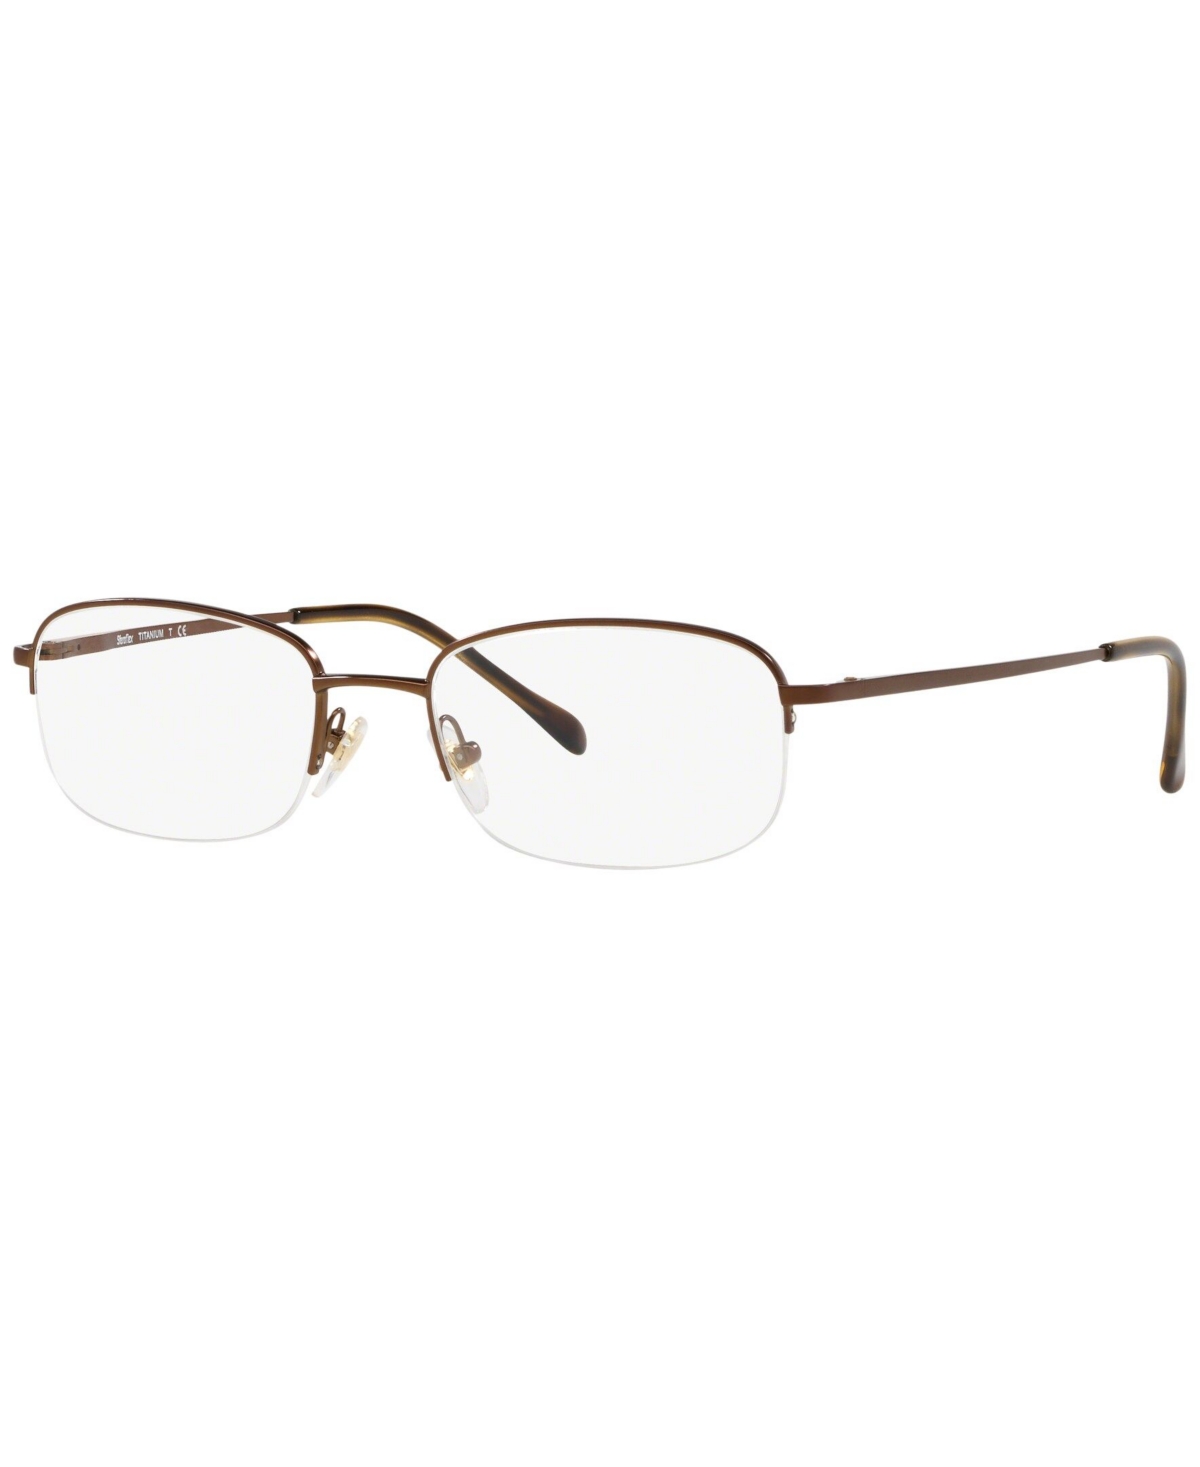 SF4032T Men's Oval Eyeglasses - Brown